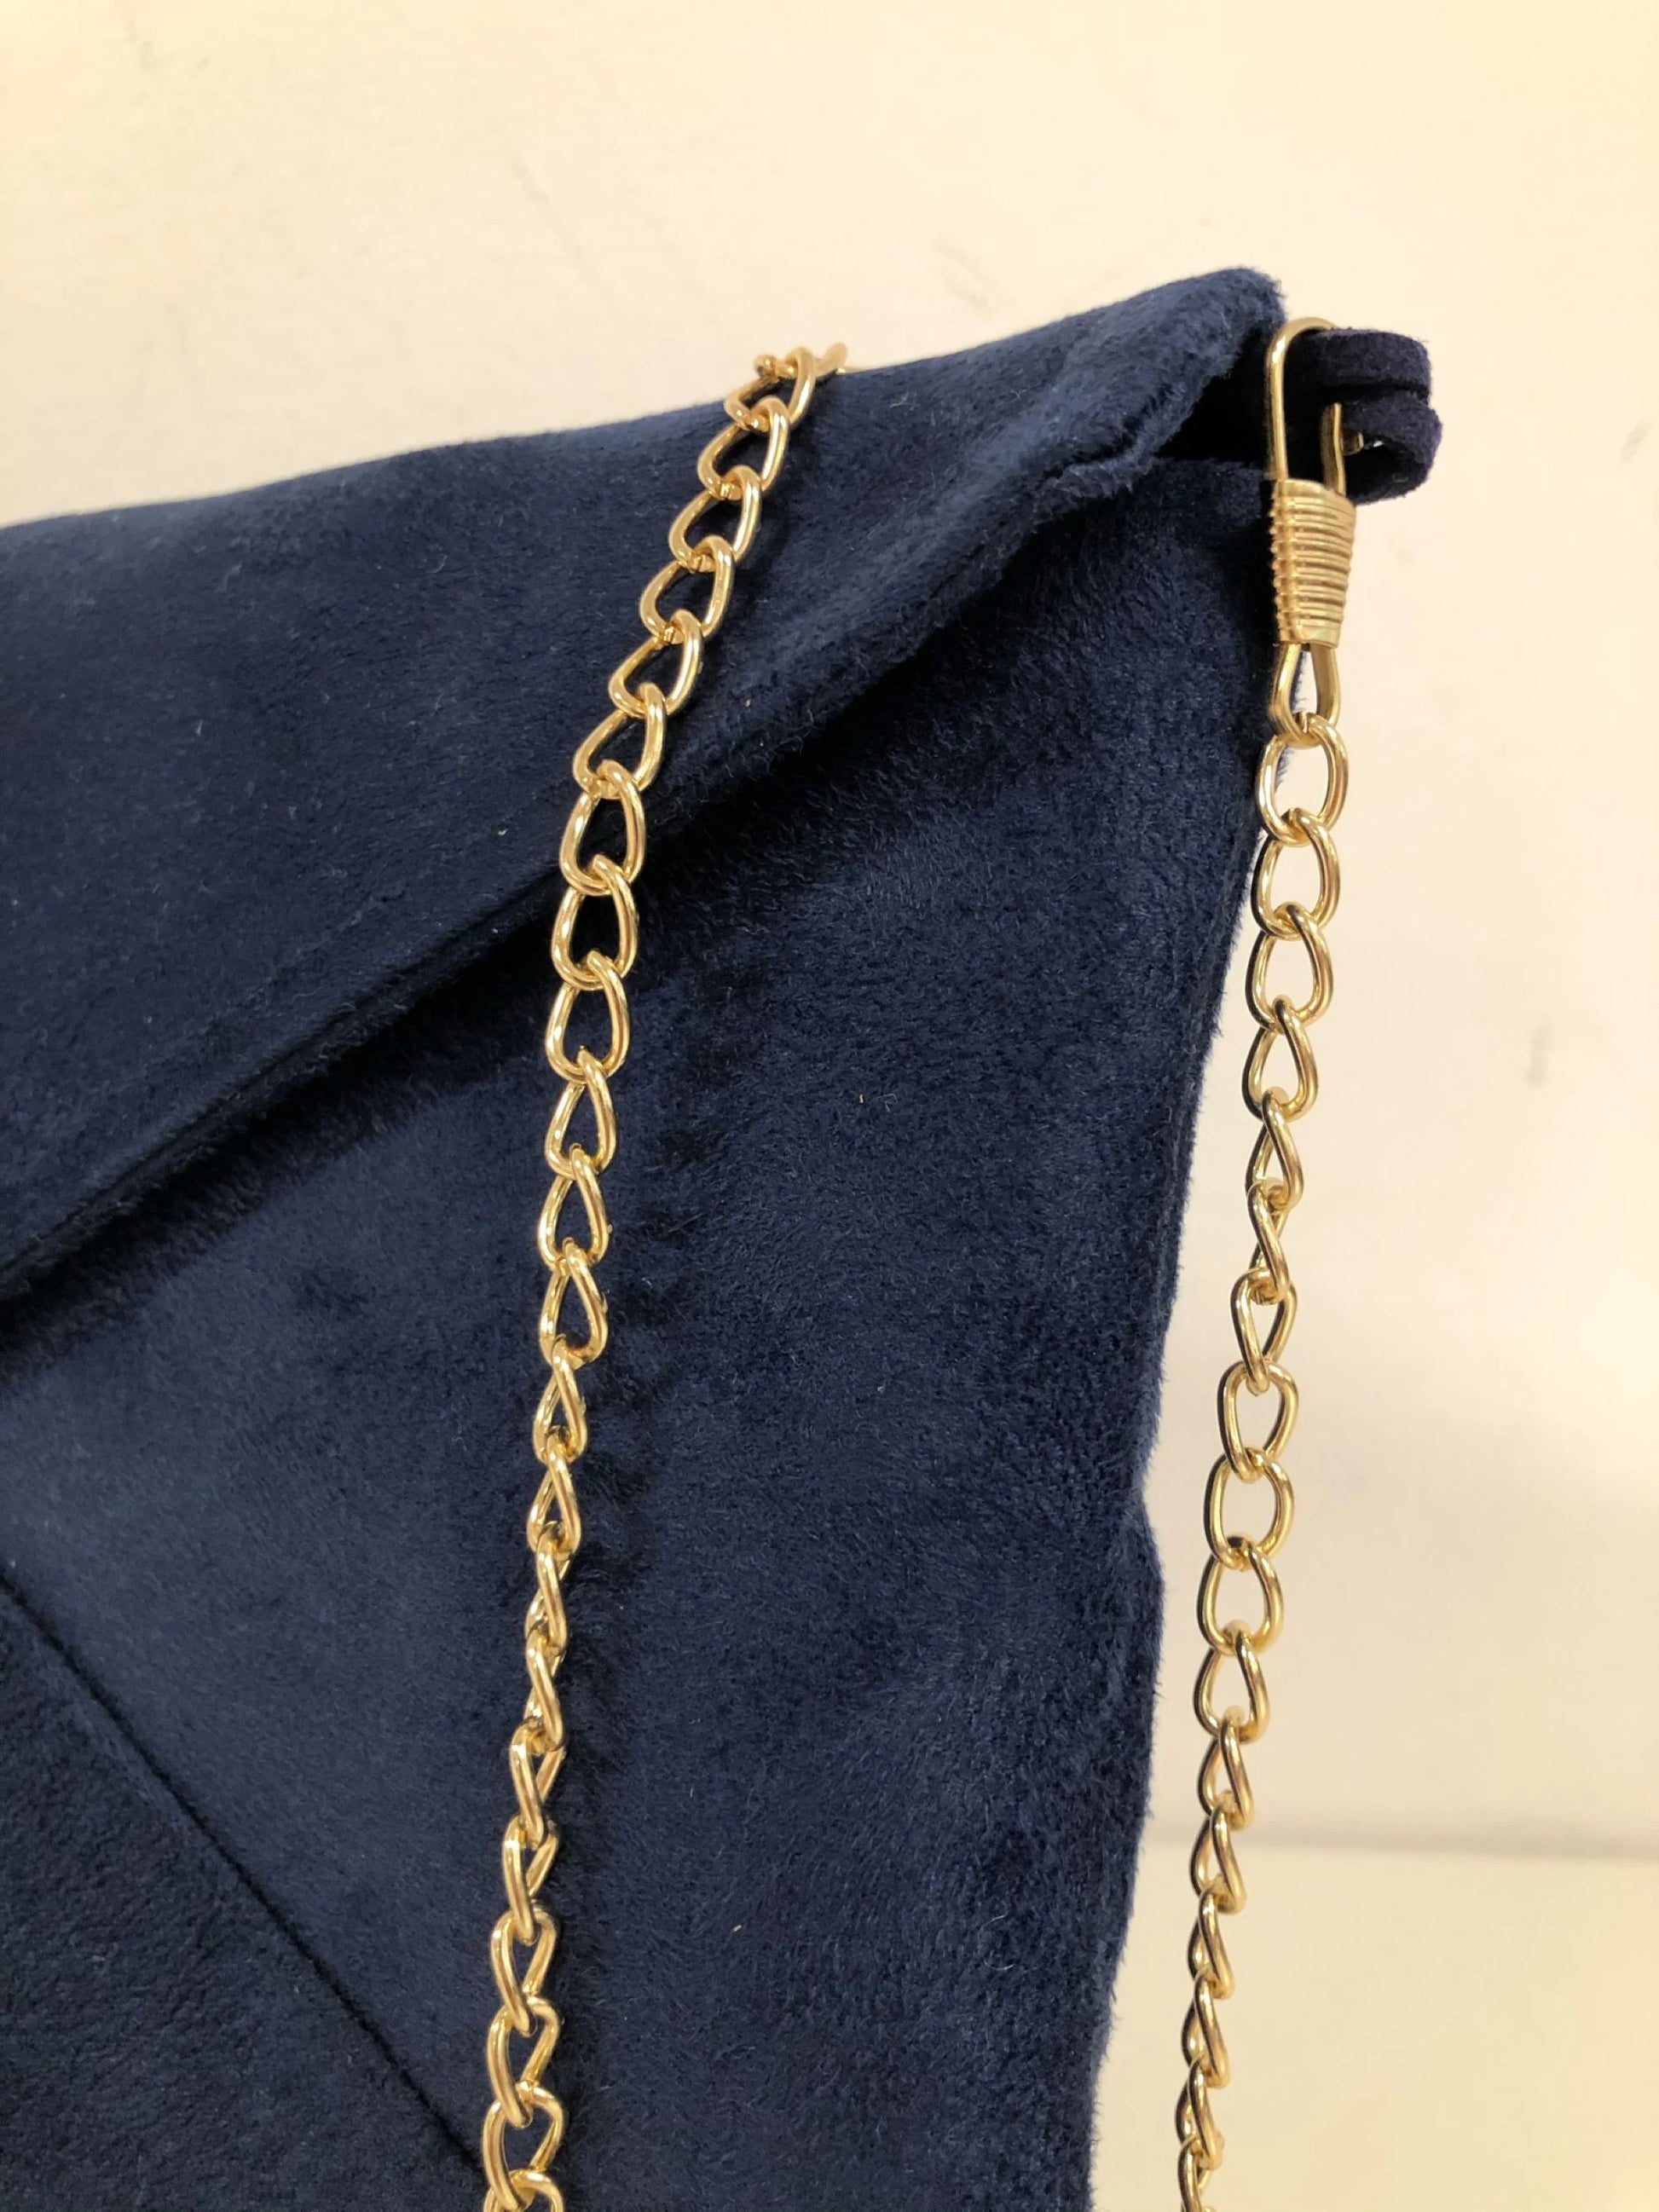 La chainette amovible du sac pochette Isa bleu marine et lin doré.